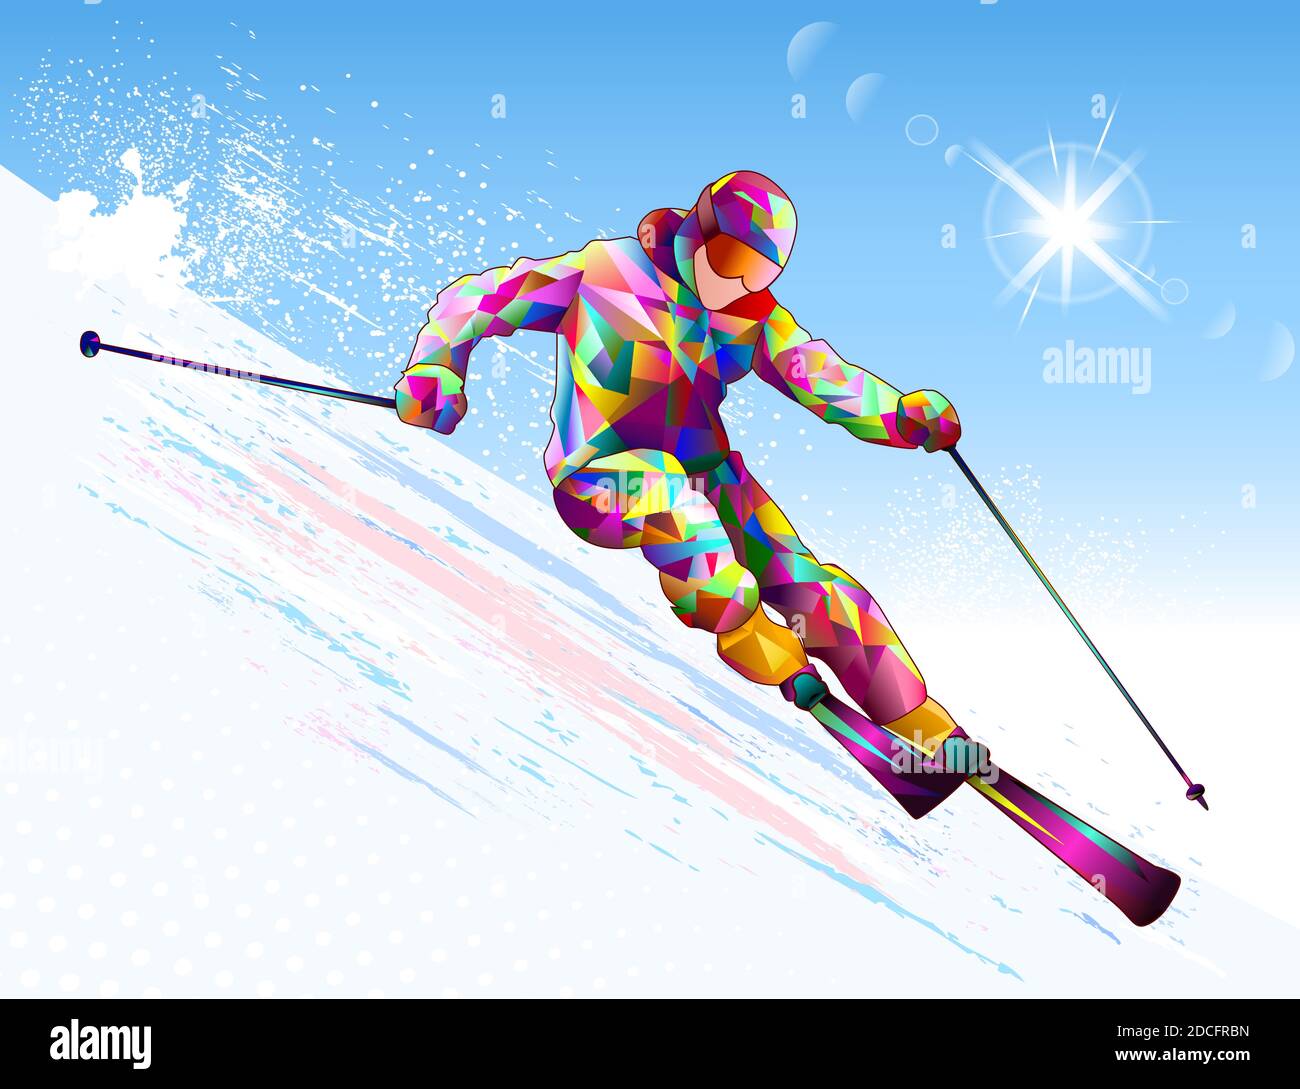 Un skieur mâle descend sur des skis sur fond de ciel et de soleil. Skieur alpin sur une pente enneigée. Illustration de Vecteur